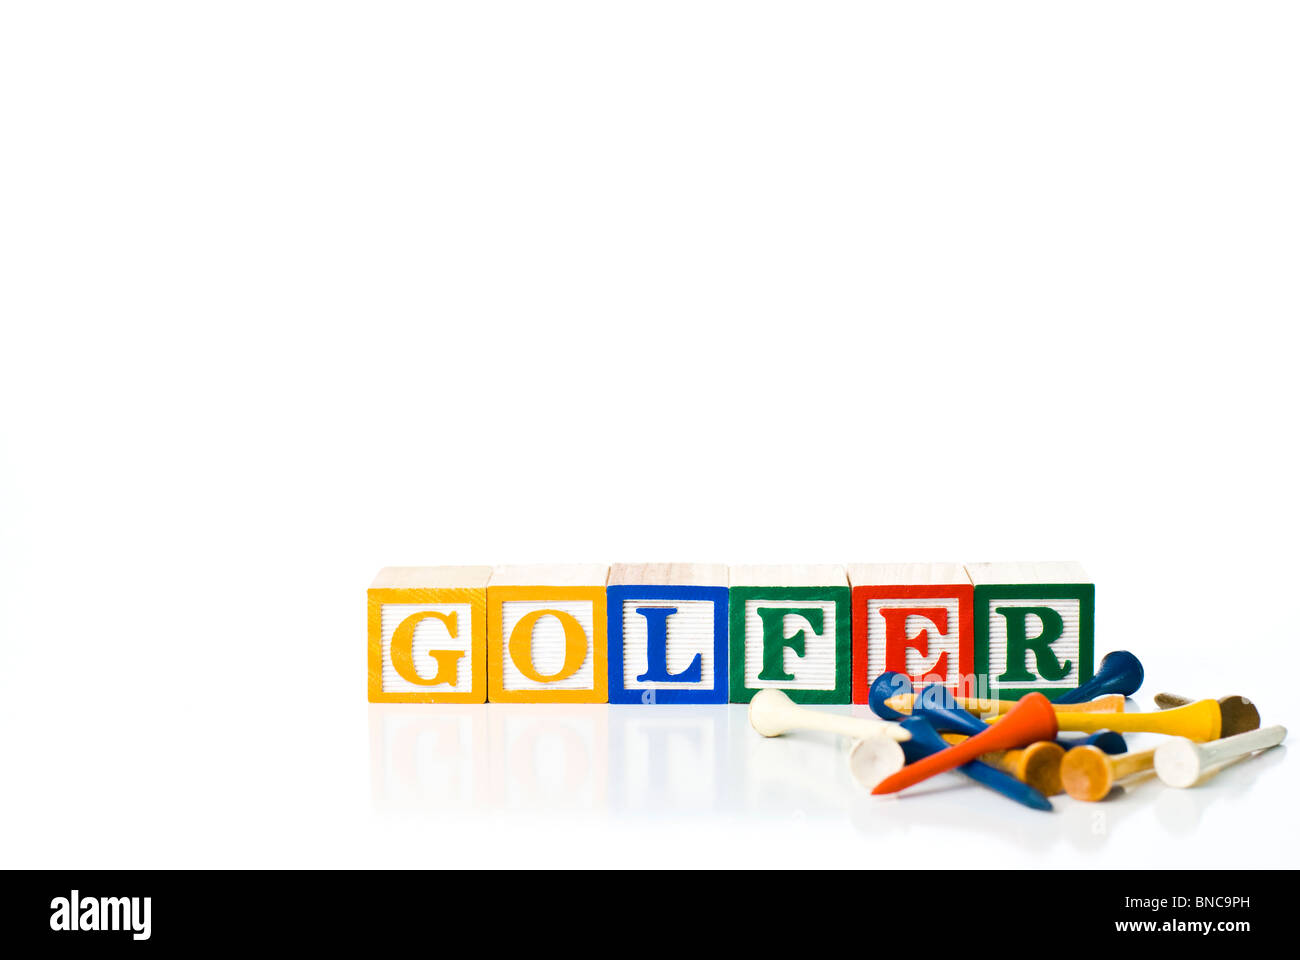 Bunte Kinder-Blöcke Rechtschreibung GOLFER mit Golf-tees Stockfoto